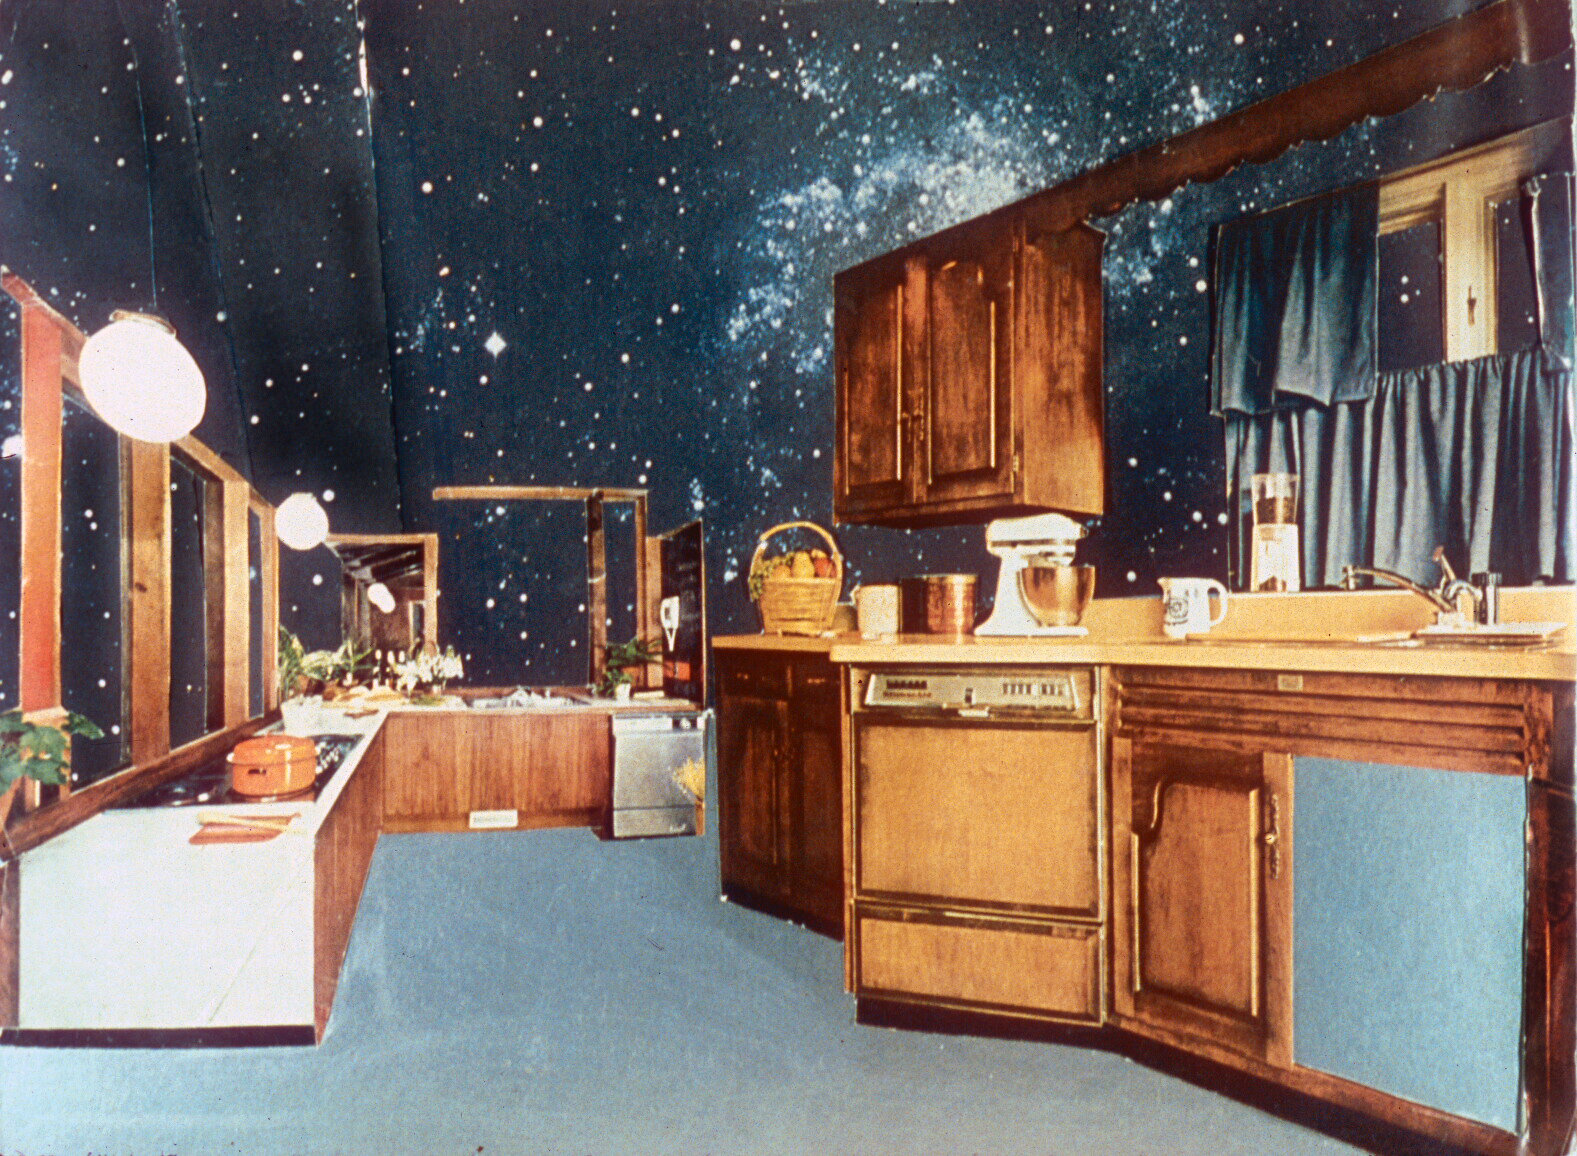  Cosmic Kitchen II 